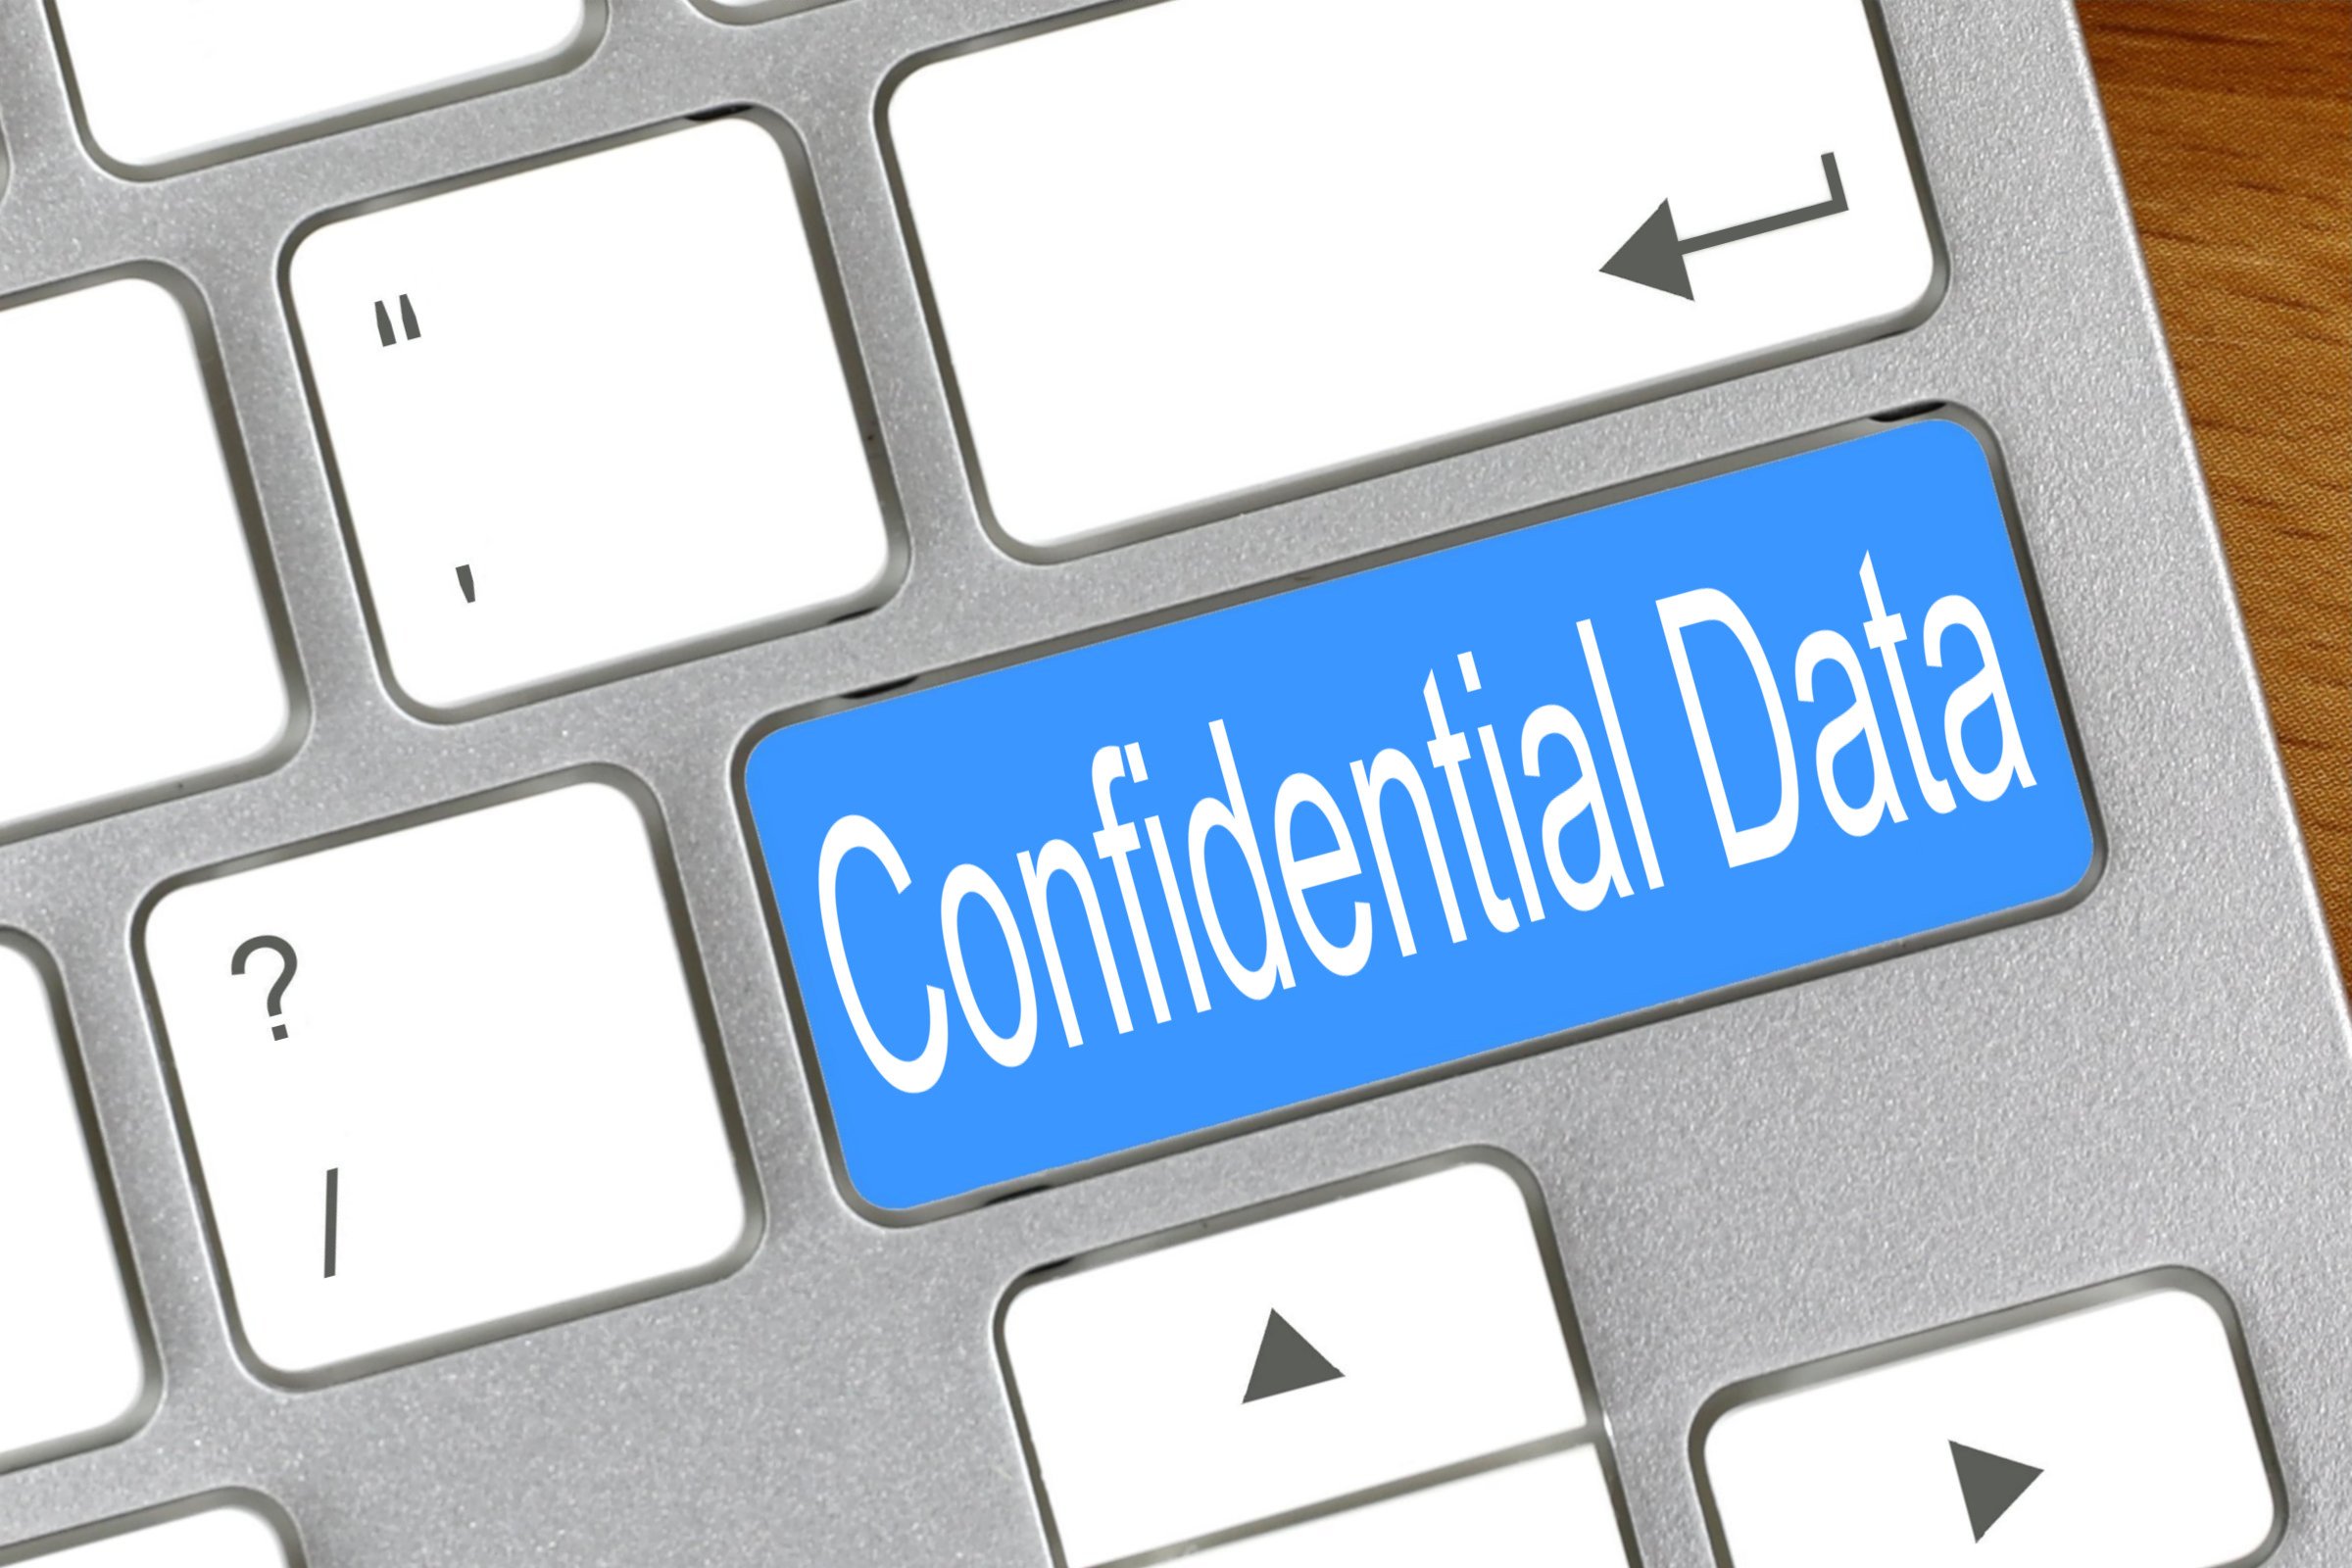 confidential data